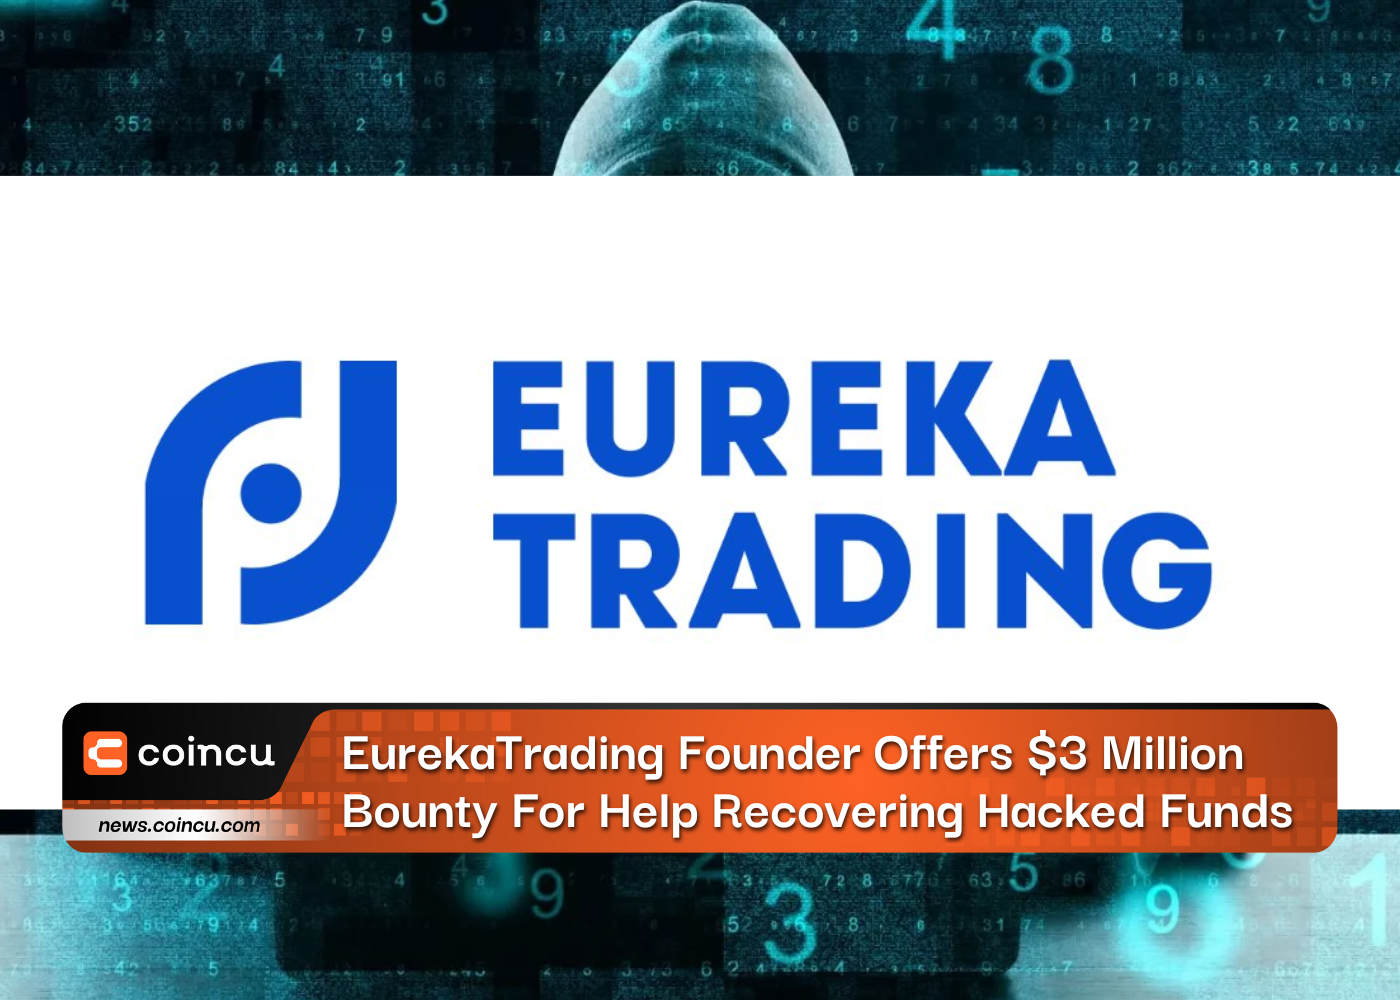 EurekaTrading 창립자는 해킹된 자금을 복구하는 데 도움을 주기 위해 3만 달러의 현상금을 제공합니다.